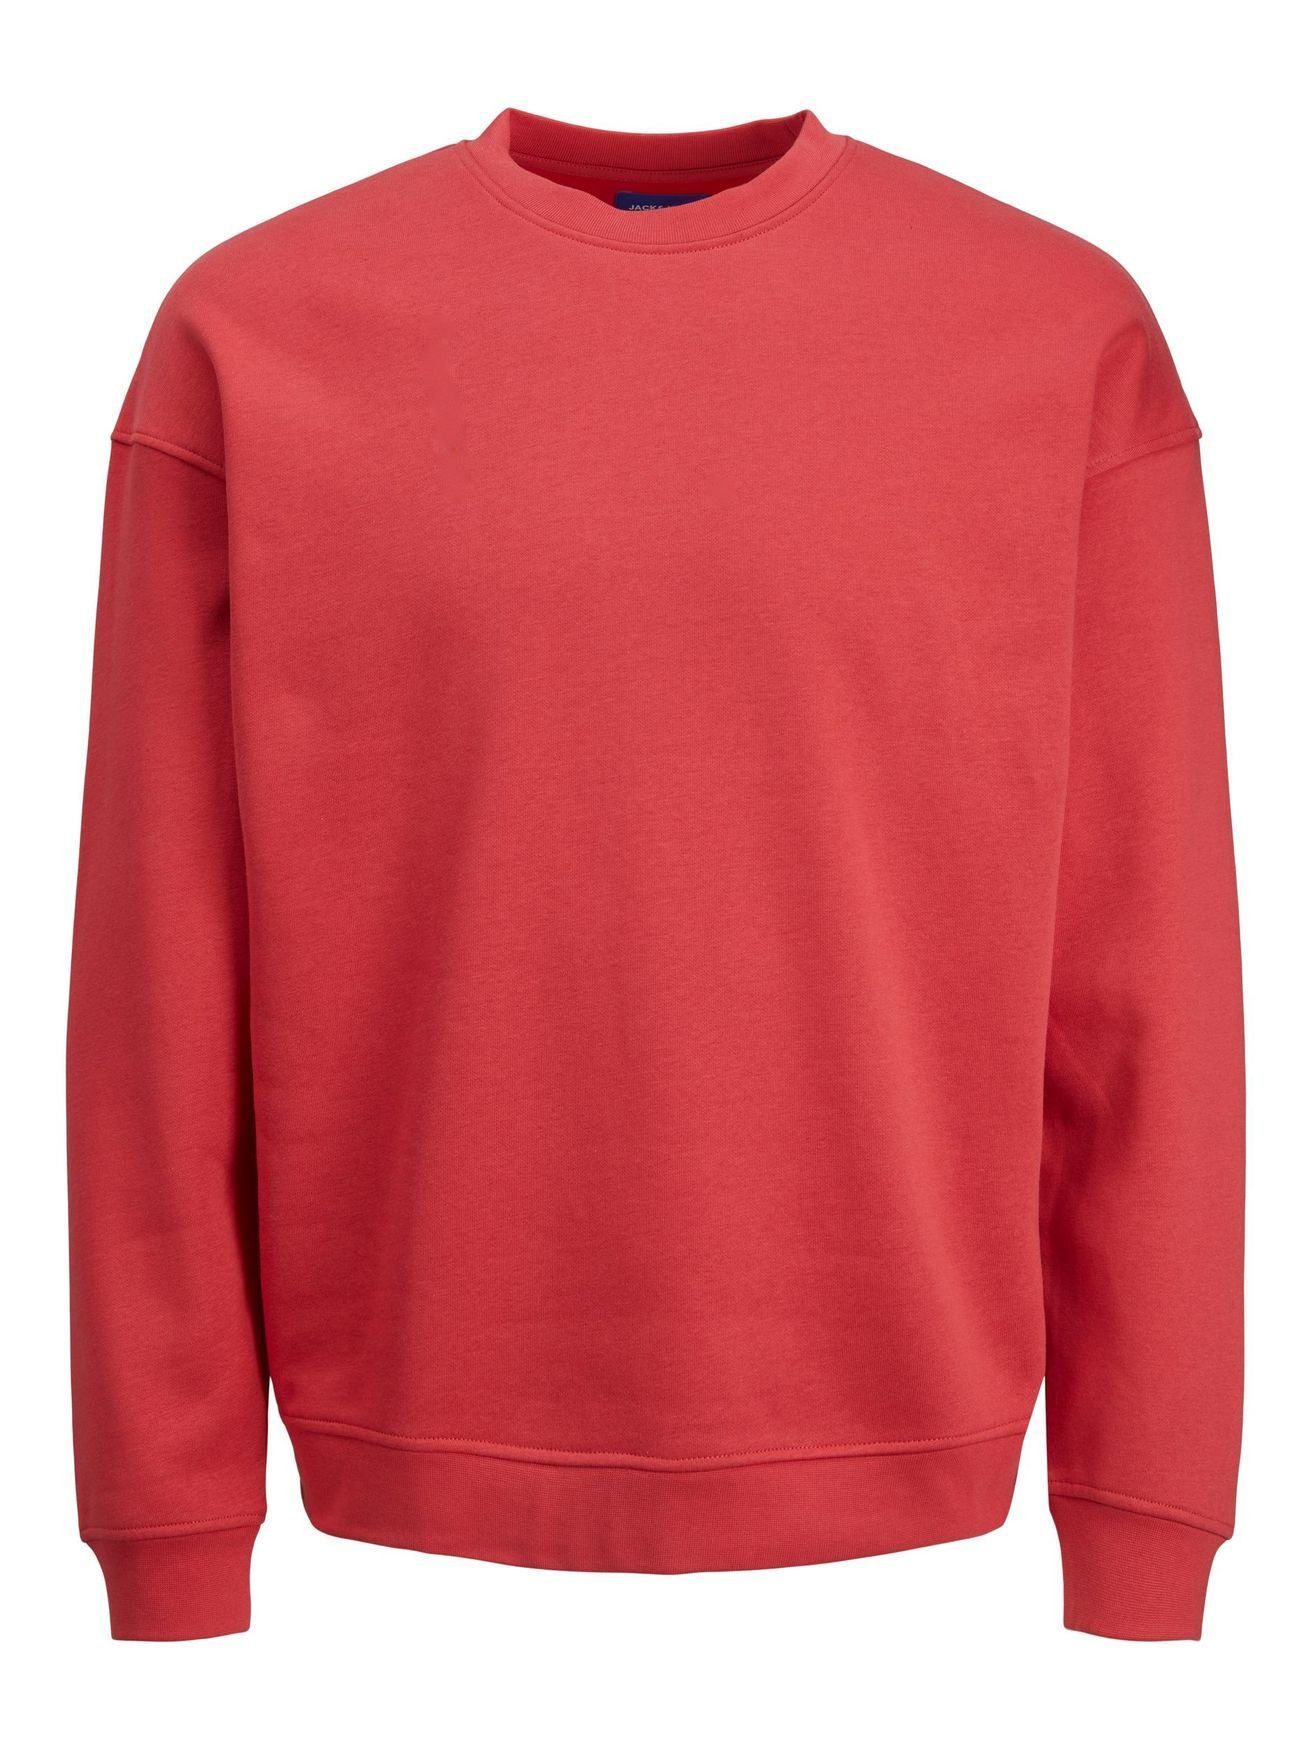 Jack & Jones Sweatshirt Basic Kapuze JORBRINK Sweater Shirt Rot Rundhals Langarm 4508 in ohne Pullover